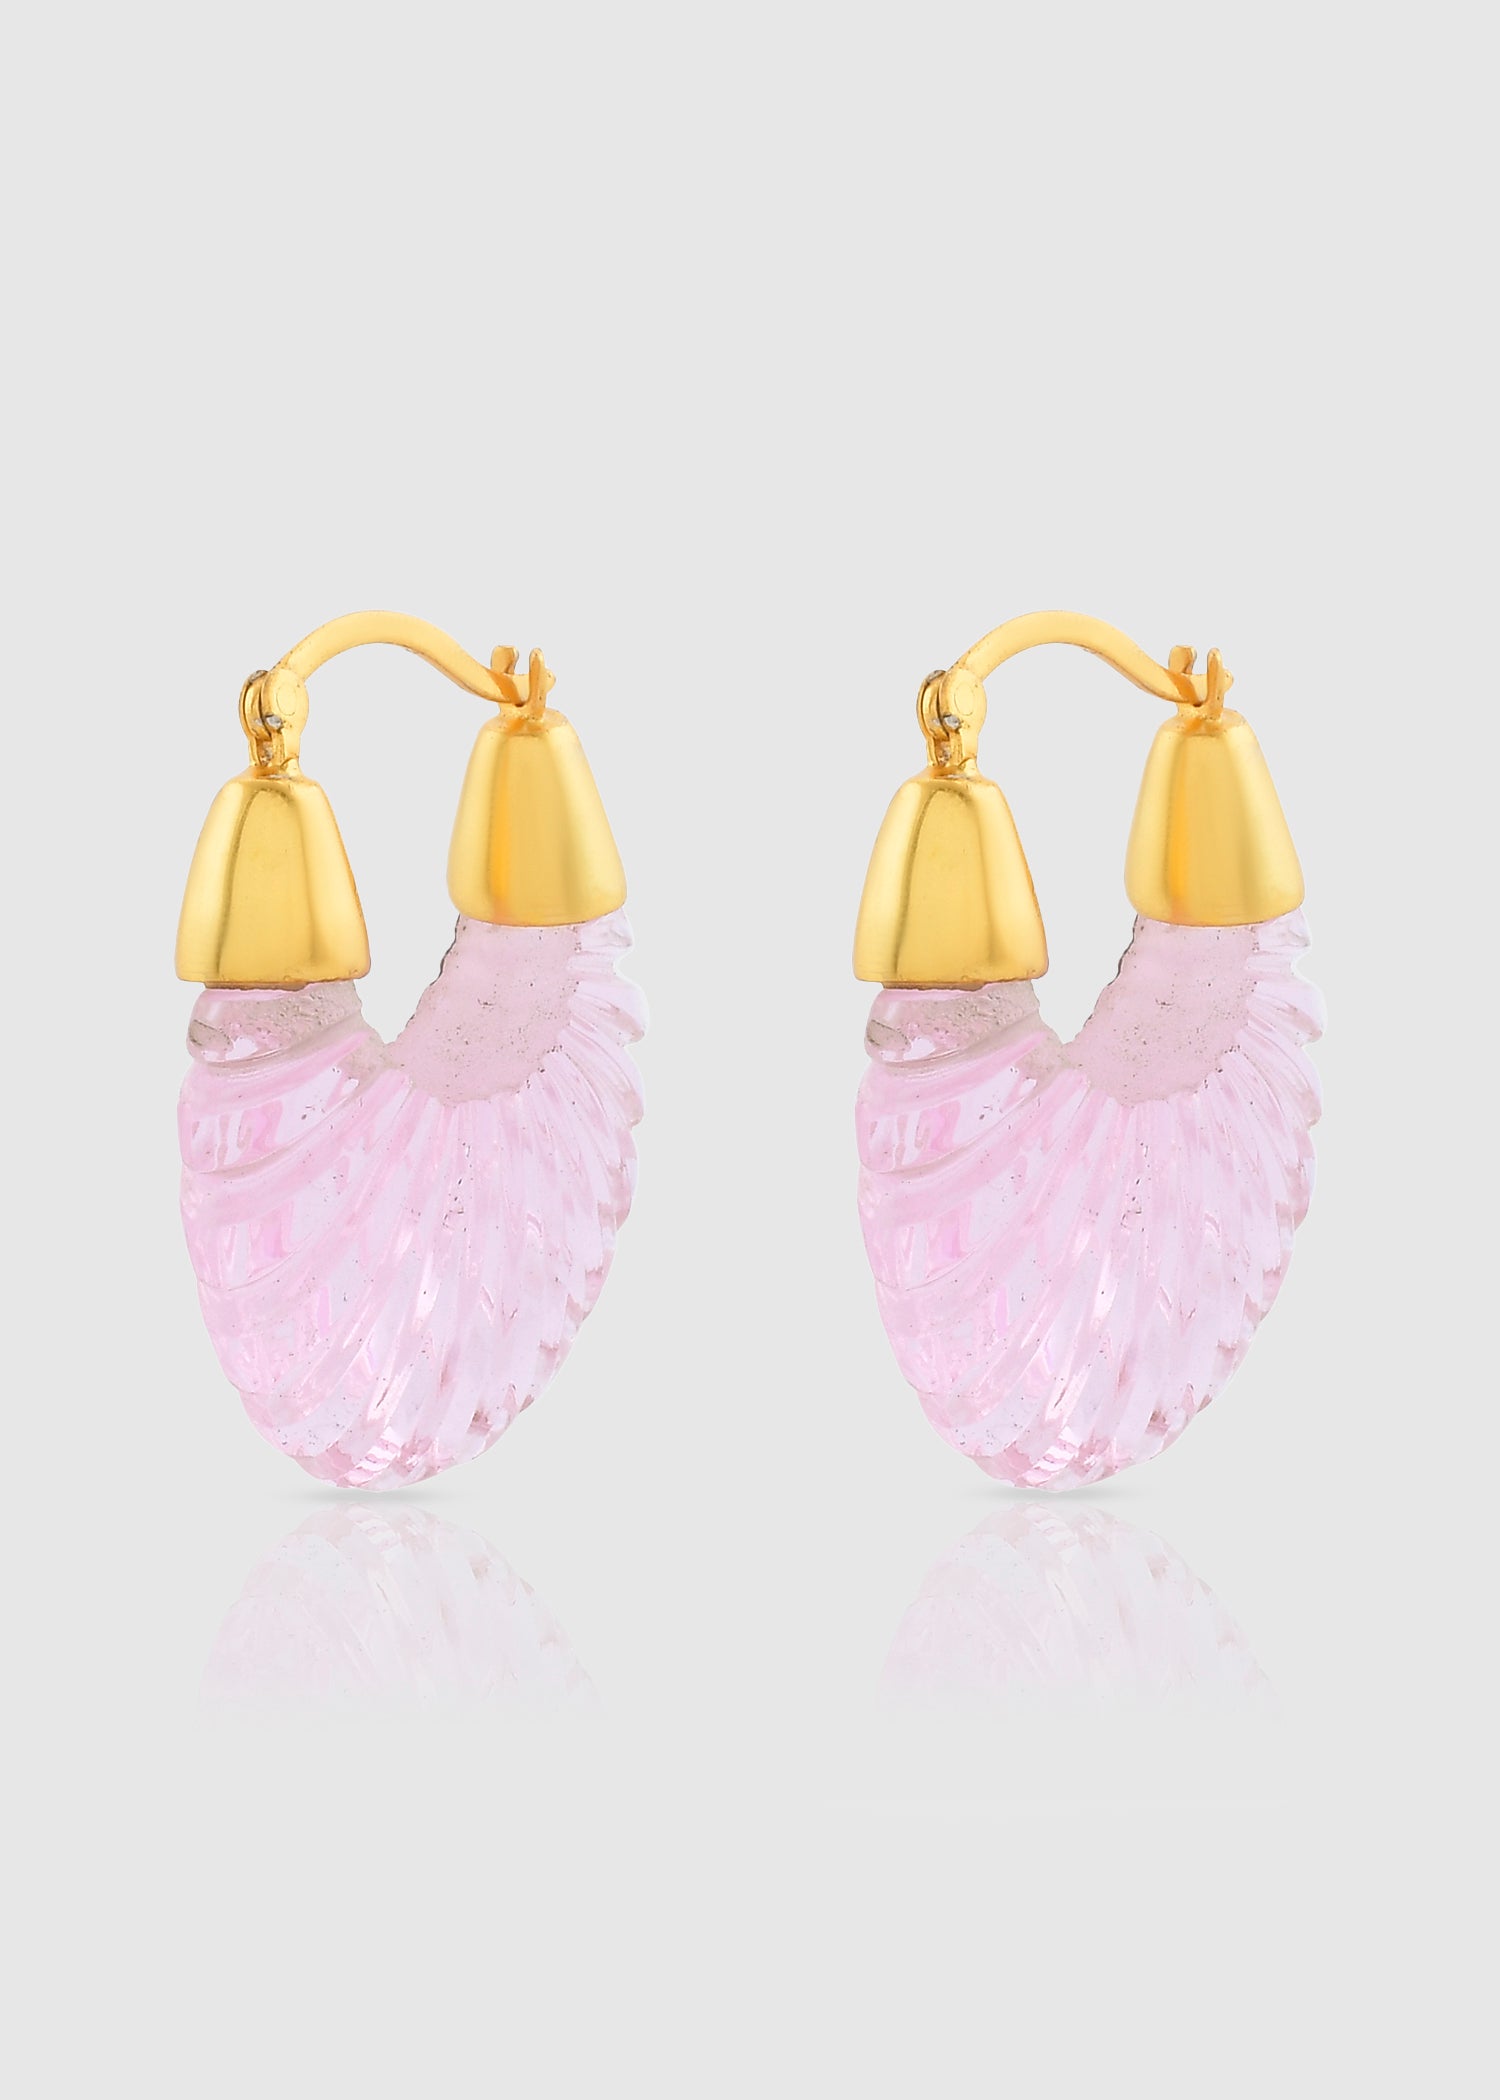 Shyla Womens Ettienne Gold Plated Glass Hoop Earrings